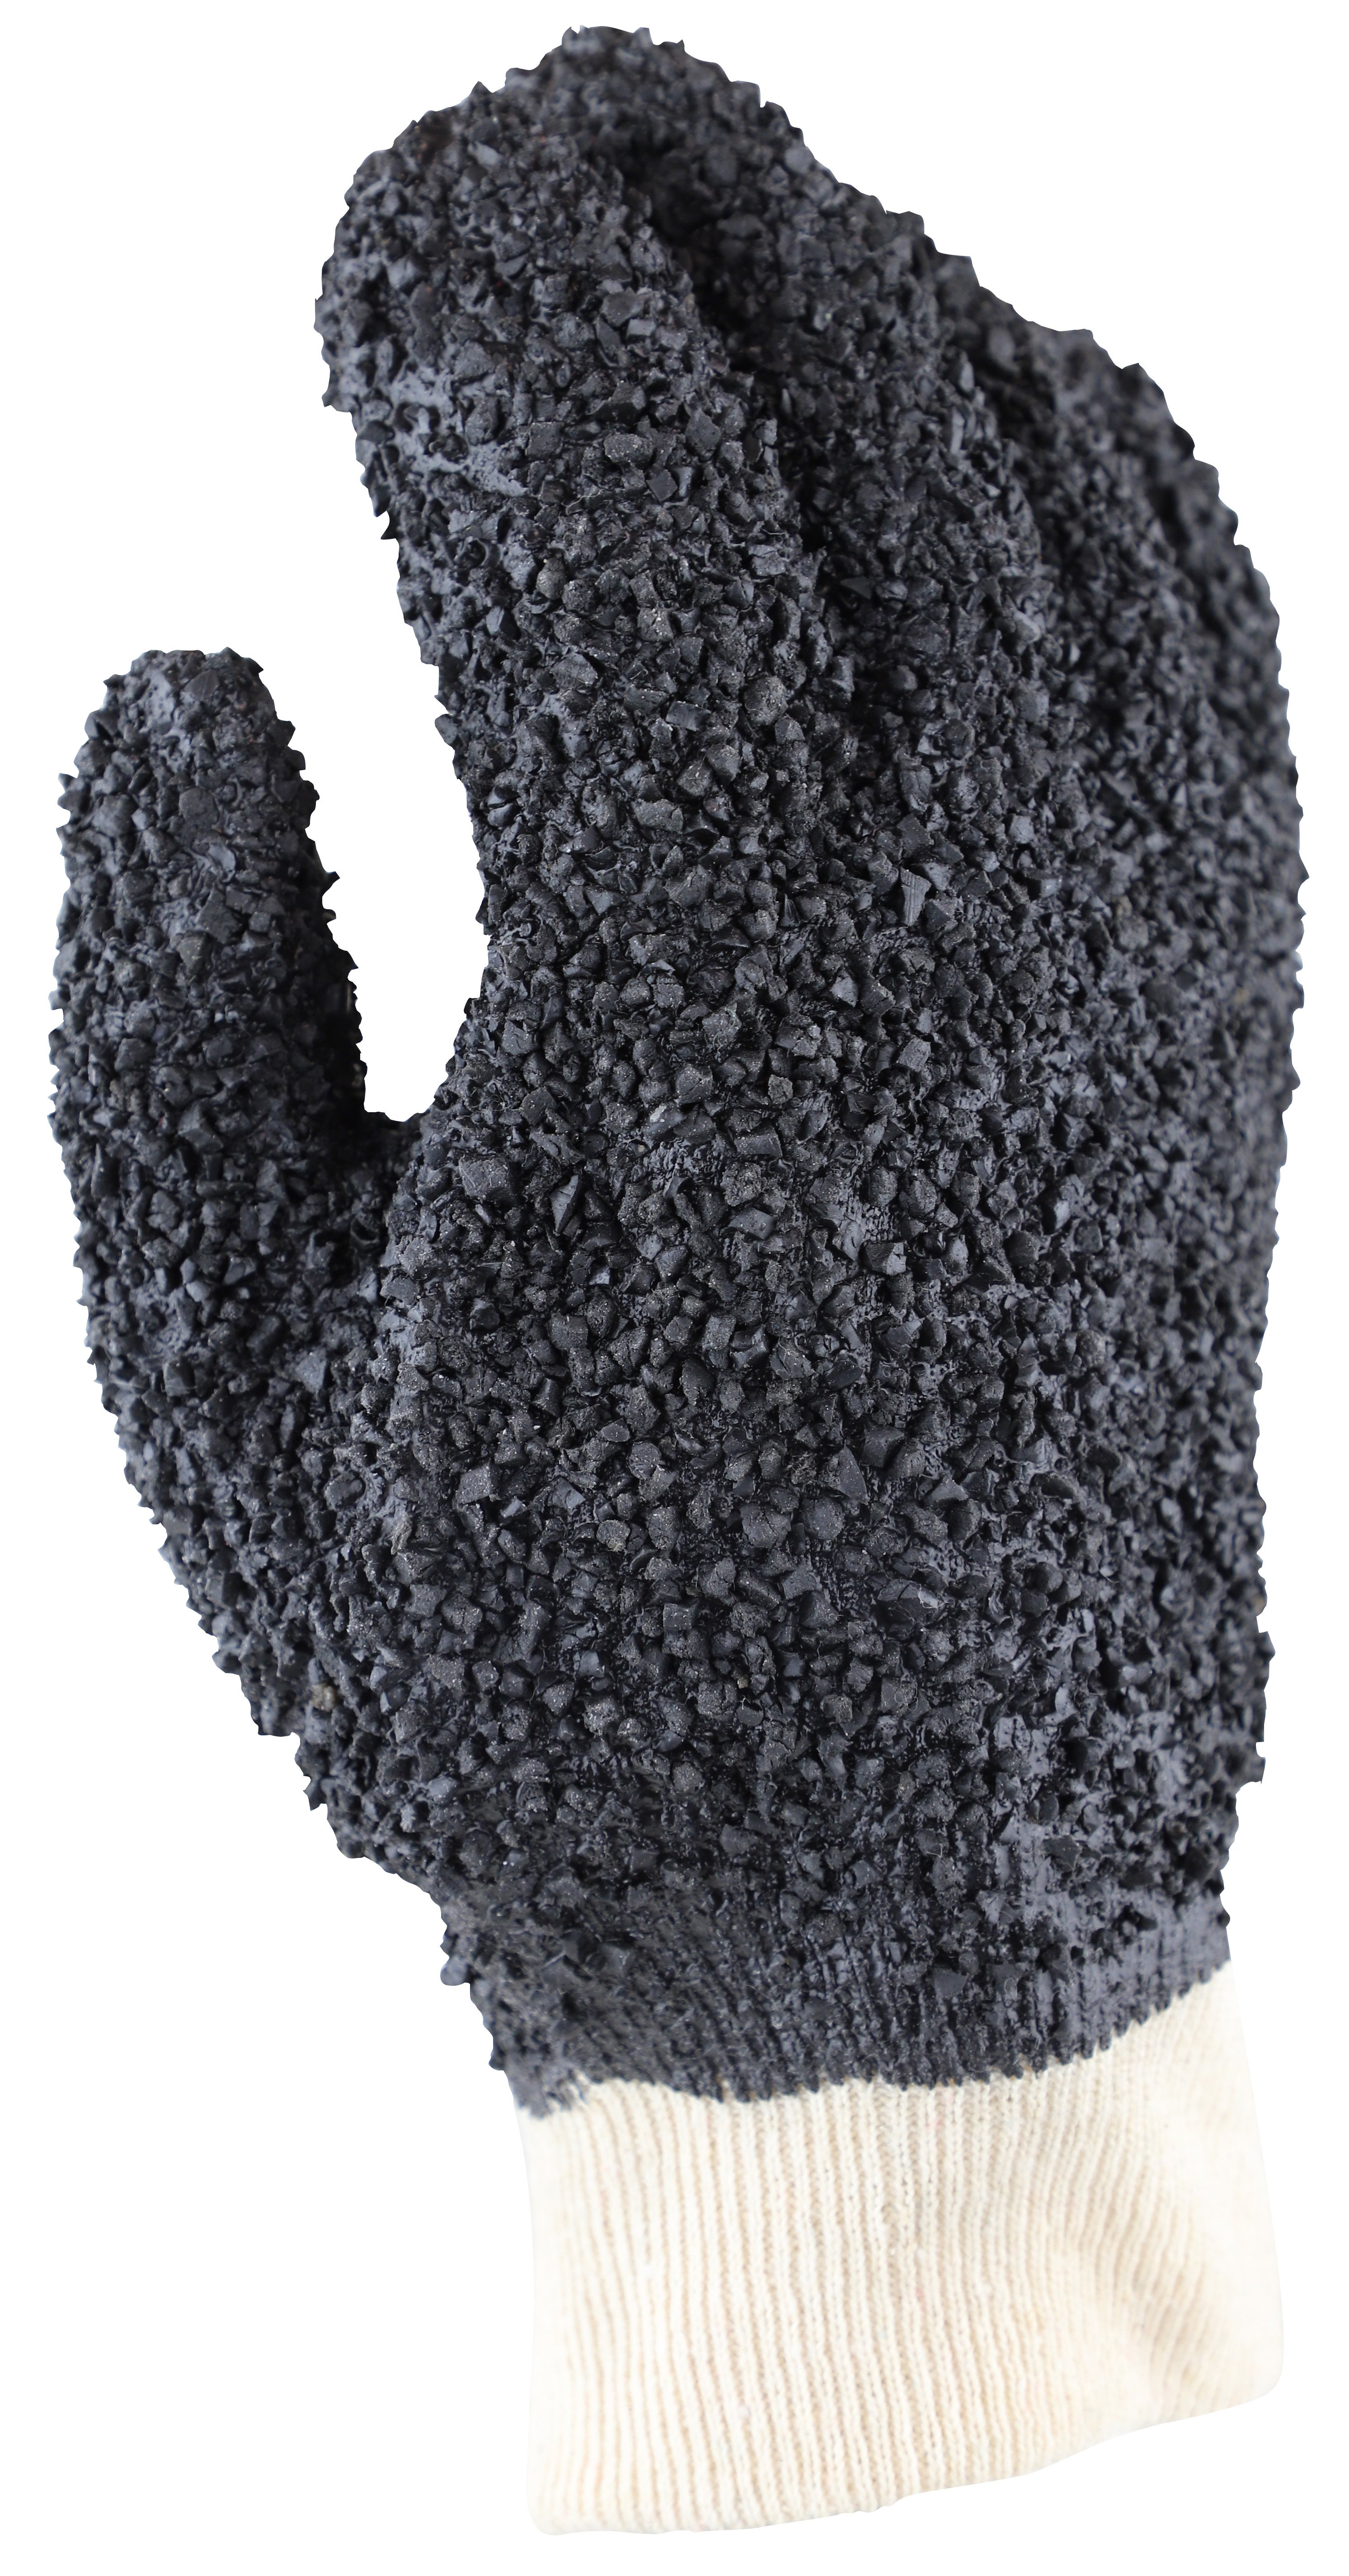 'Grizzly' Black PVC Debudding Glove - Techware Pty Ltd